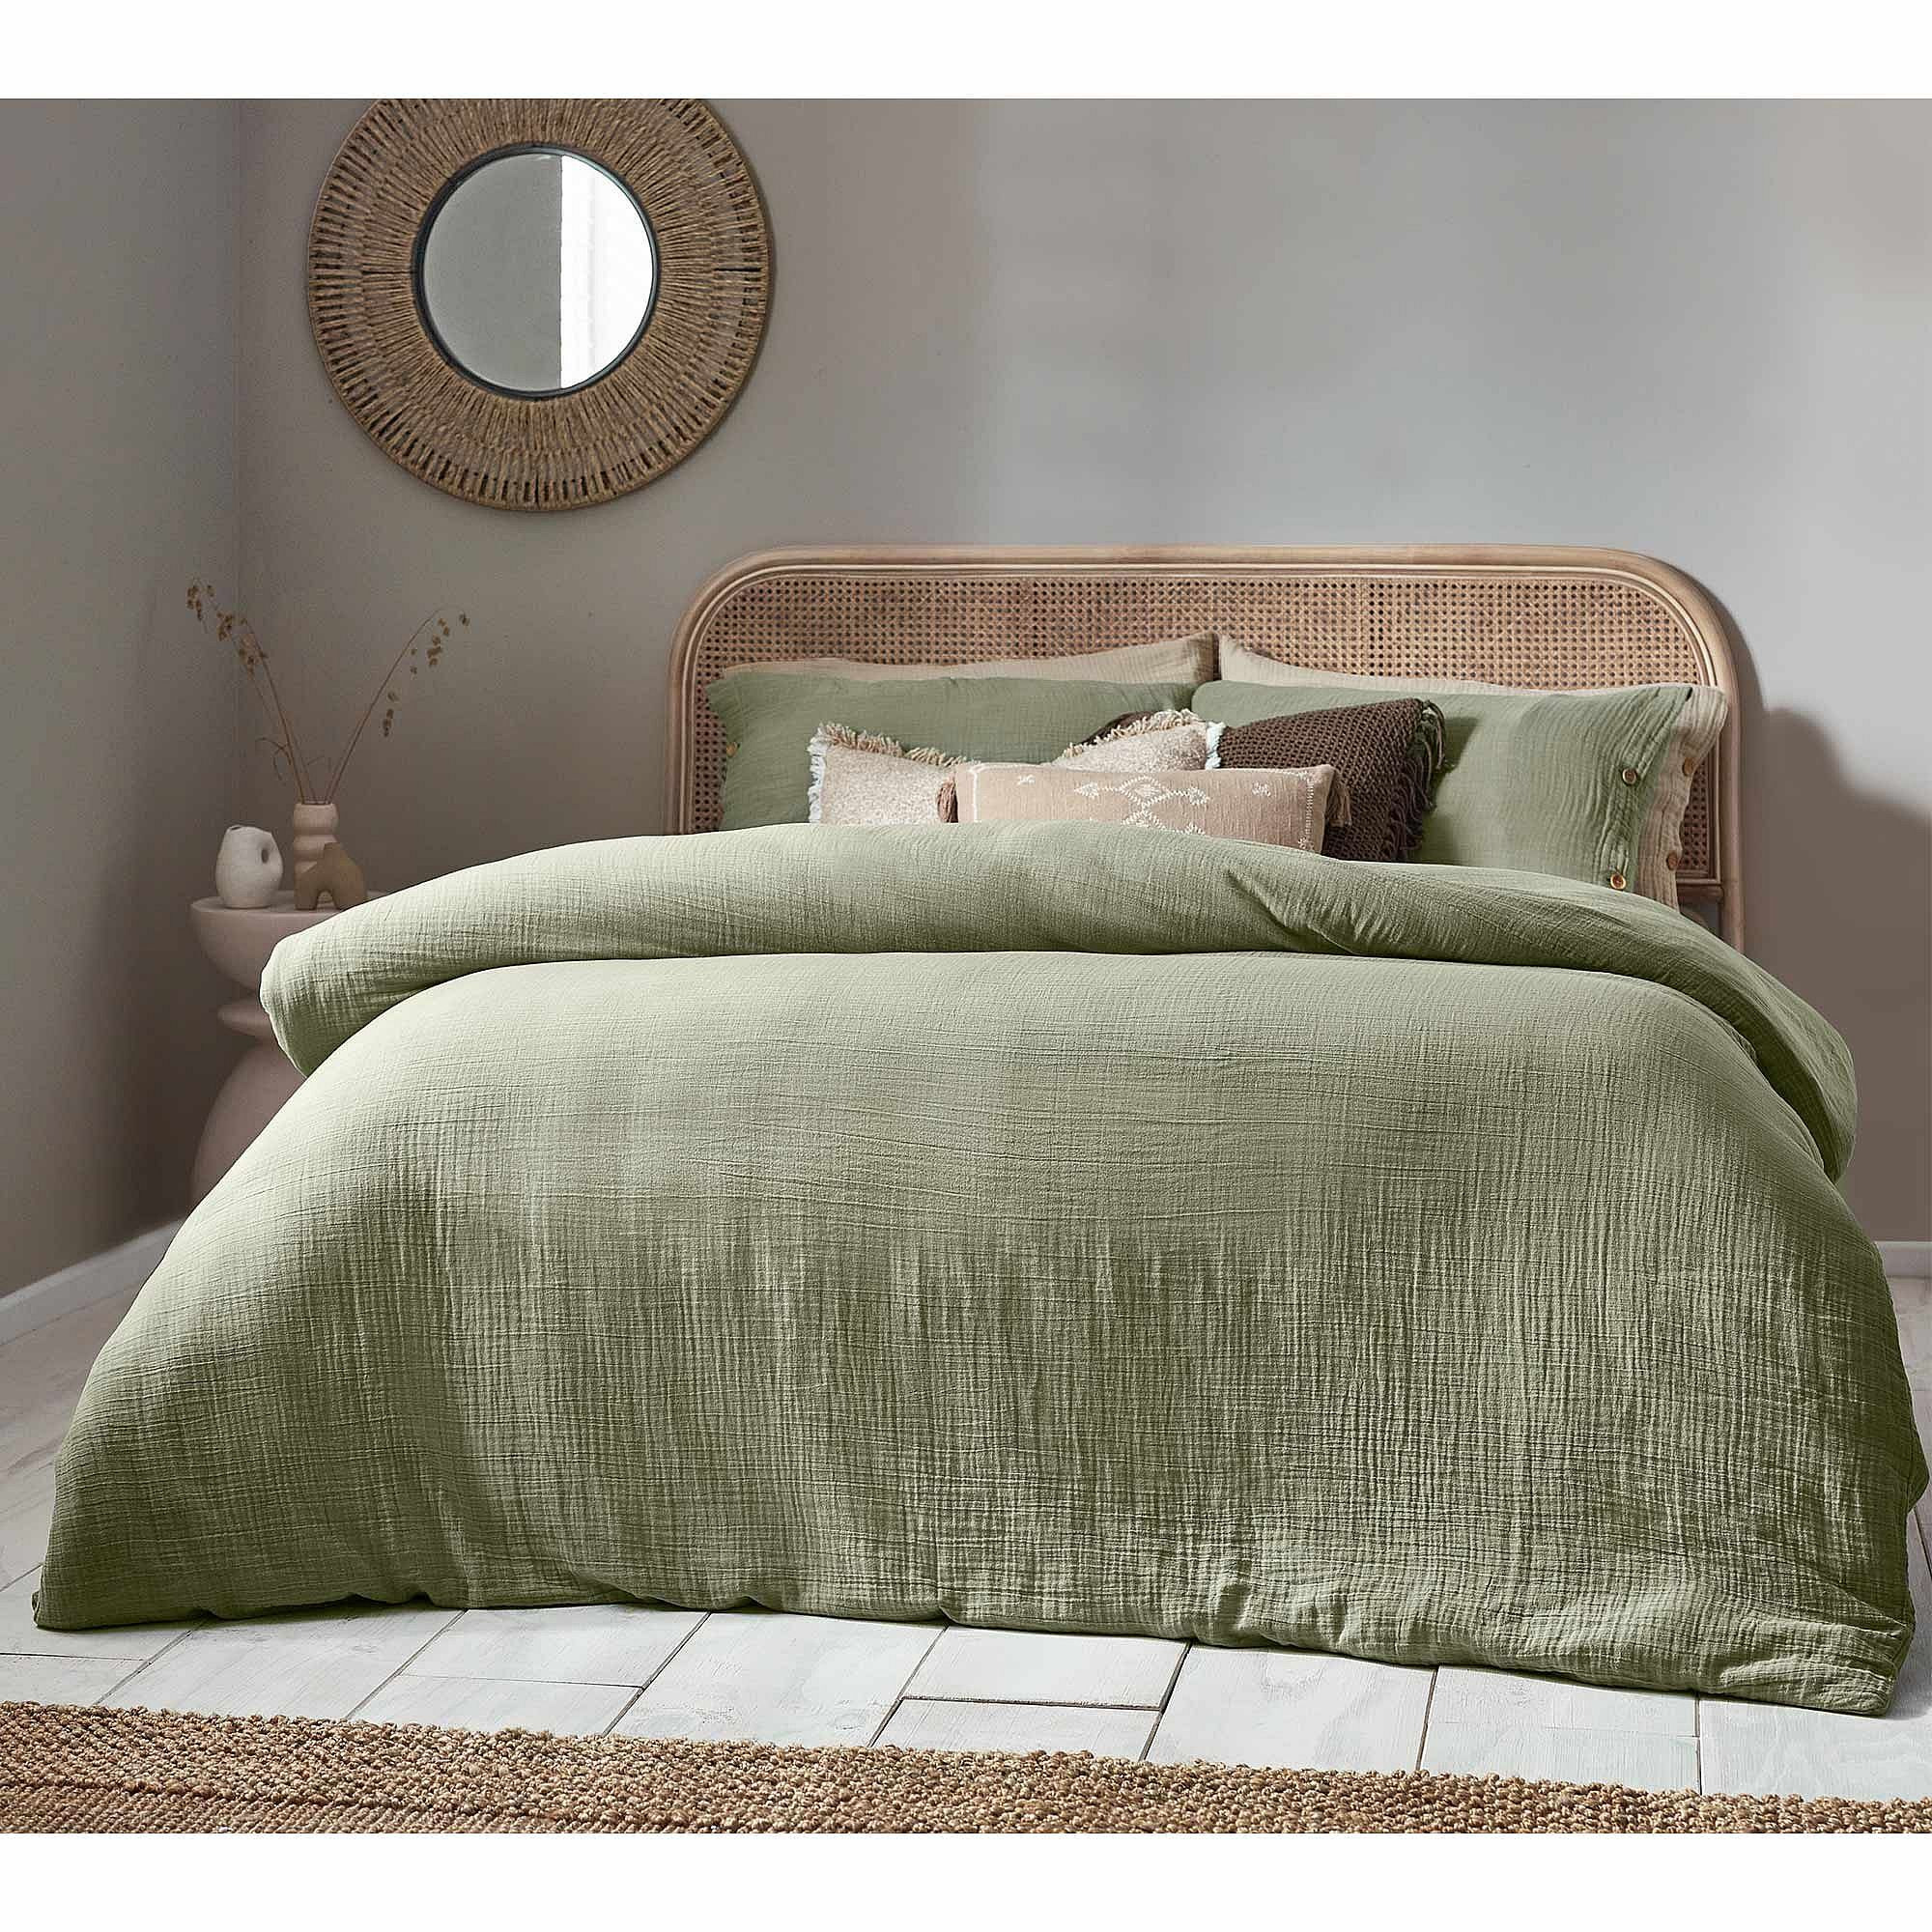 Apricity Sage Green Crinkle Bed Linen Set (King Set) - image 1